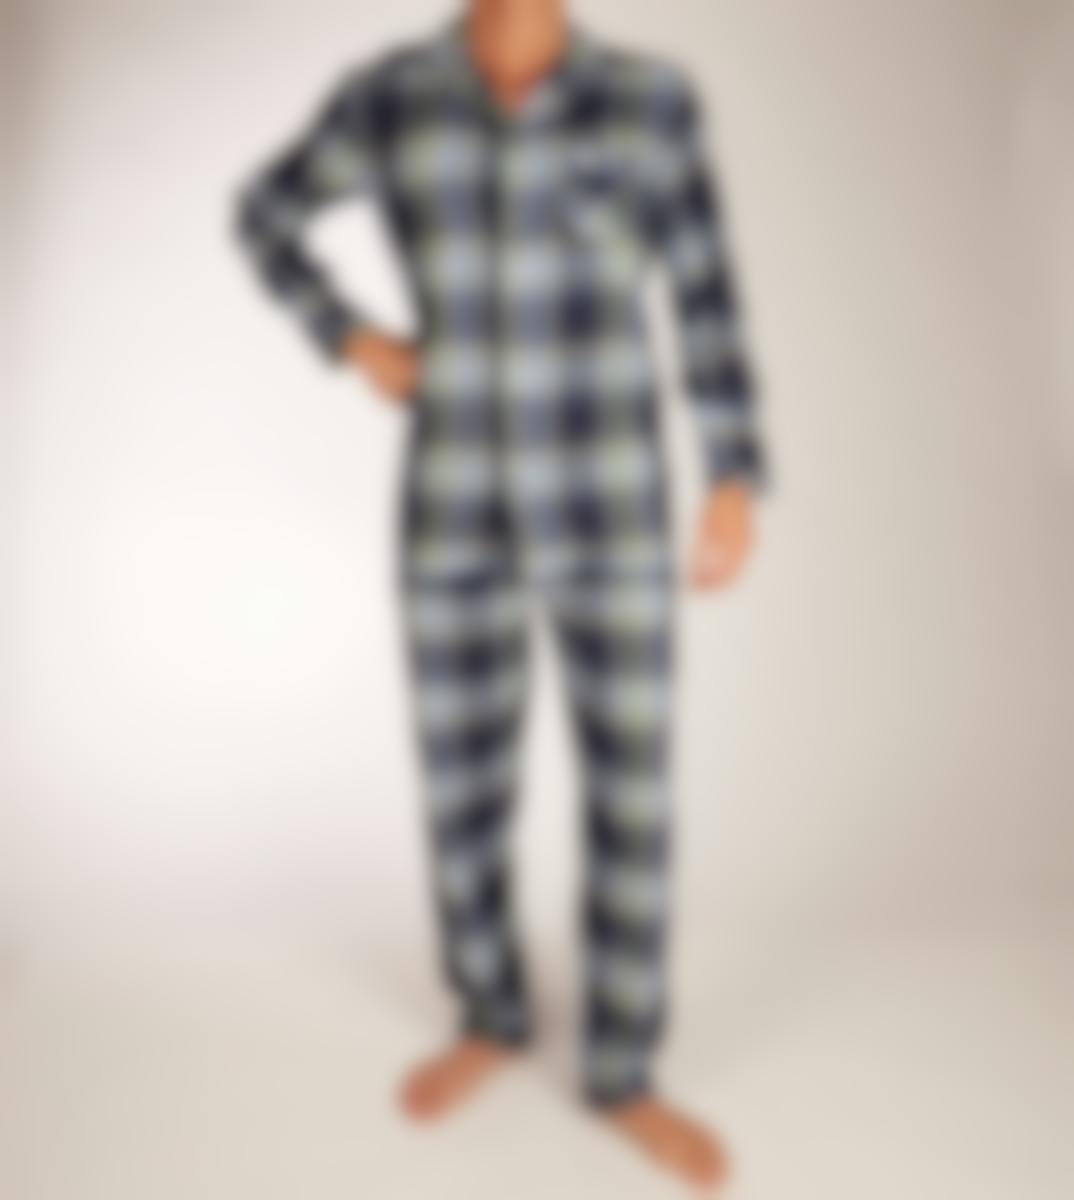 Pastunette pyjama lange broek H